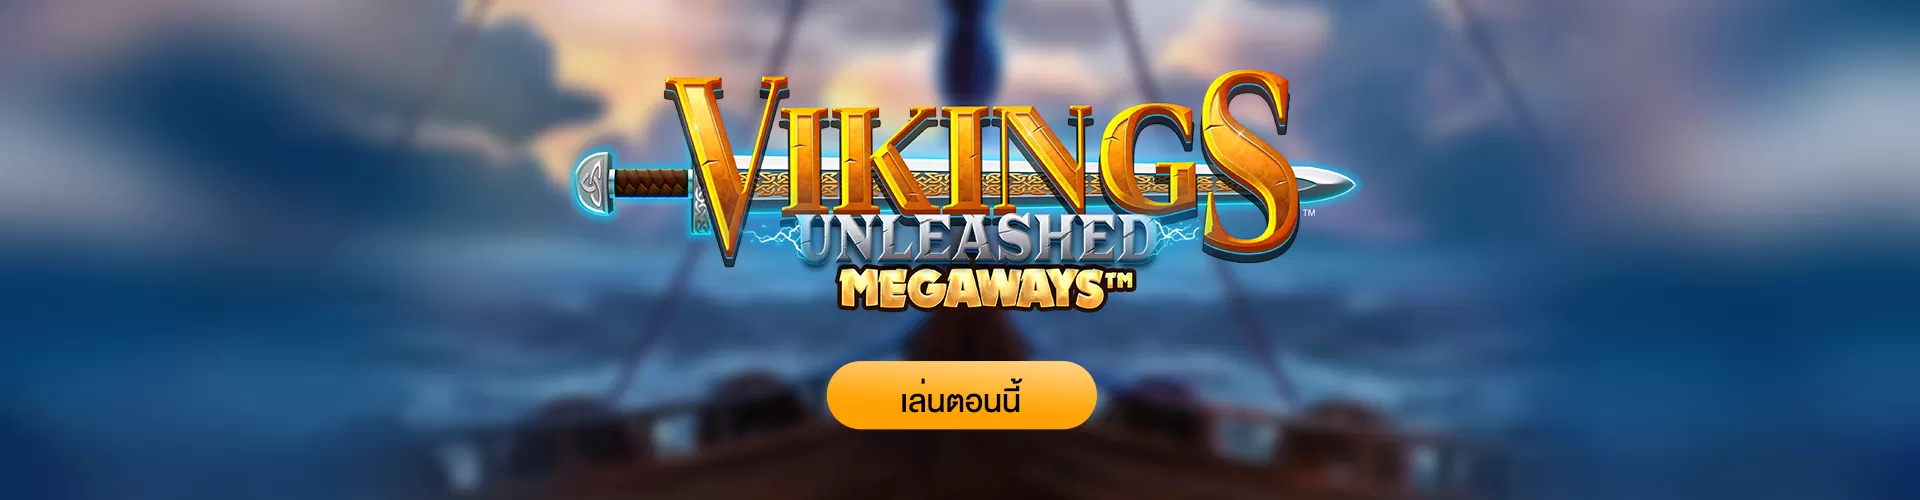 รีวิว Vikings Unleashed Megaways เกมสล็อตทำเงิน ซื้อสปินฟรีได้